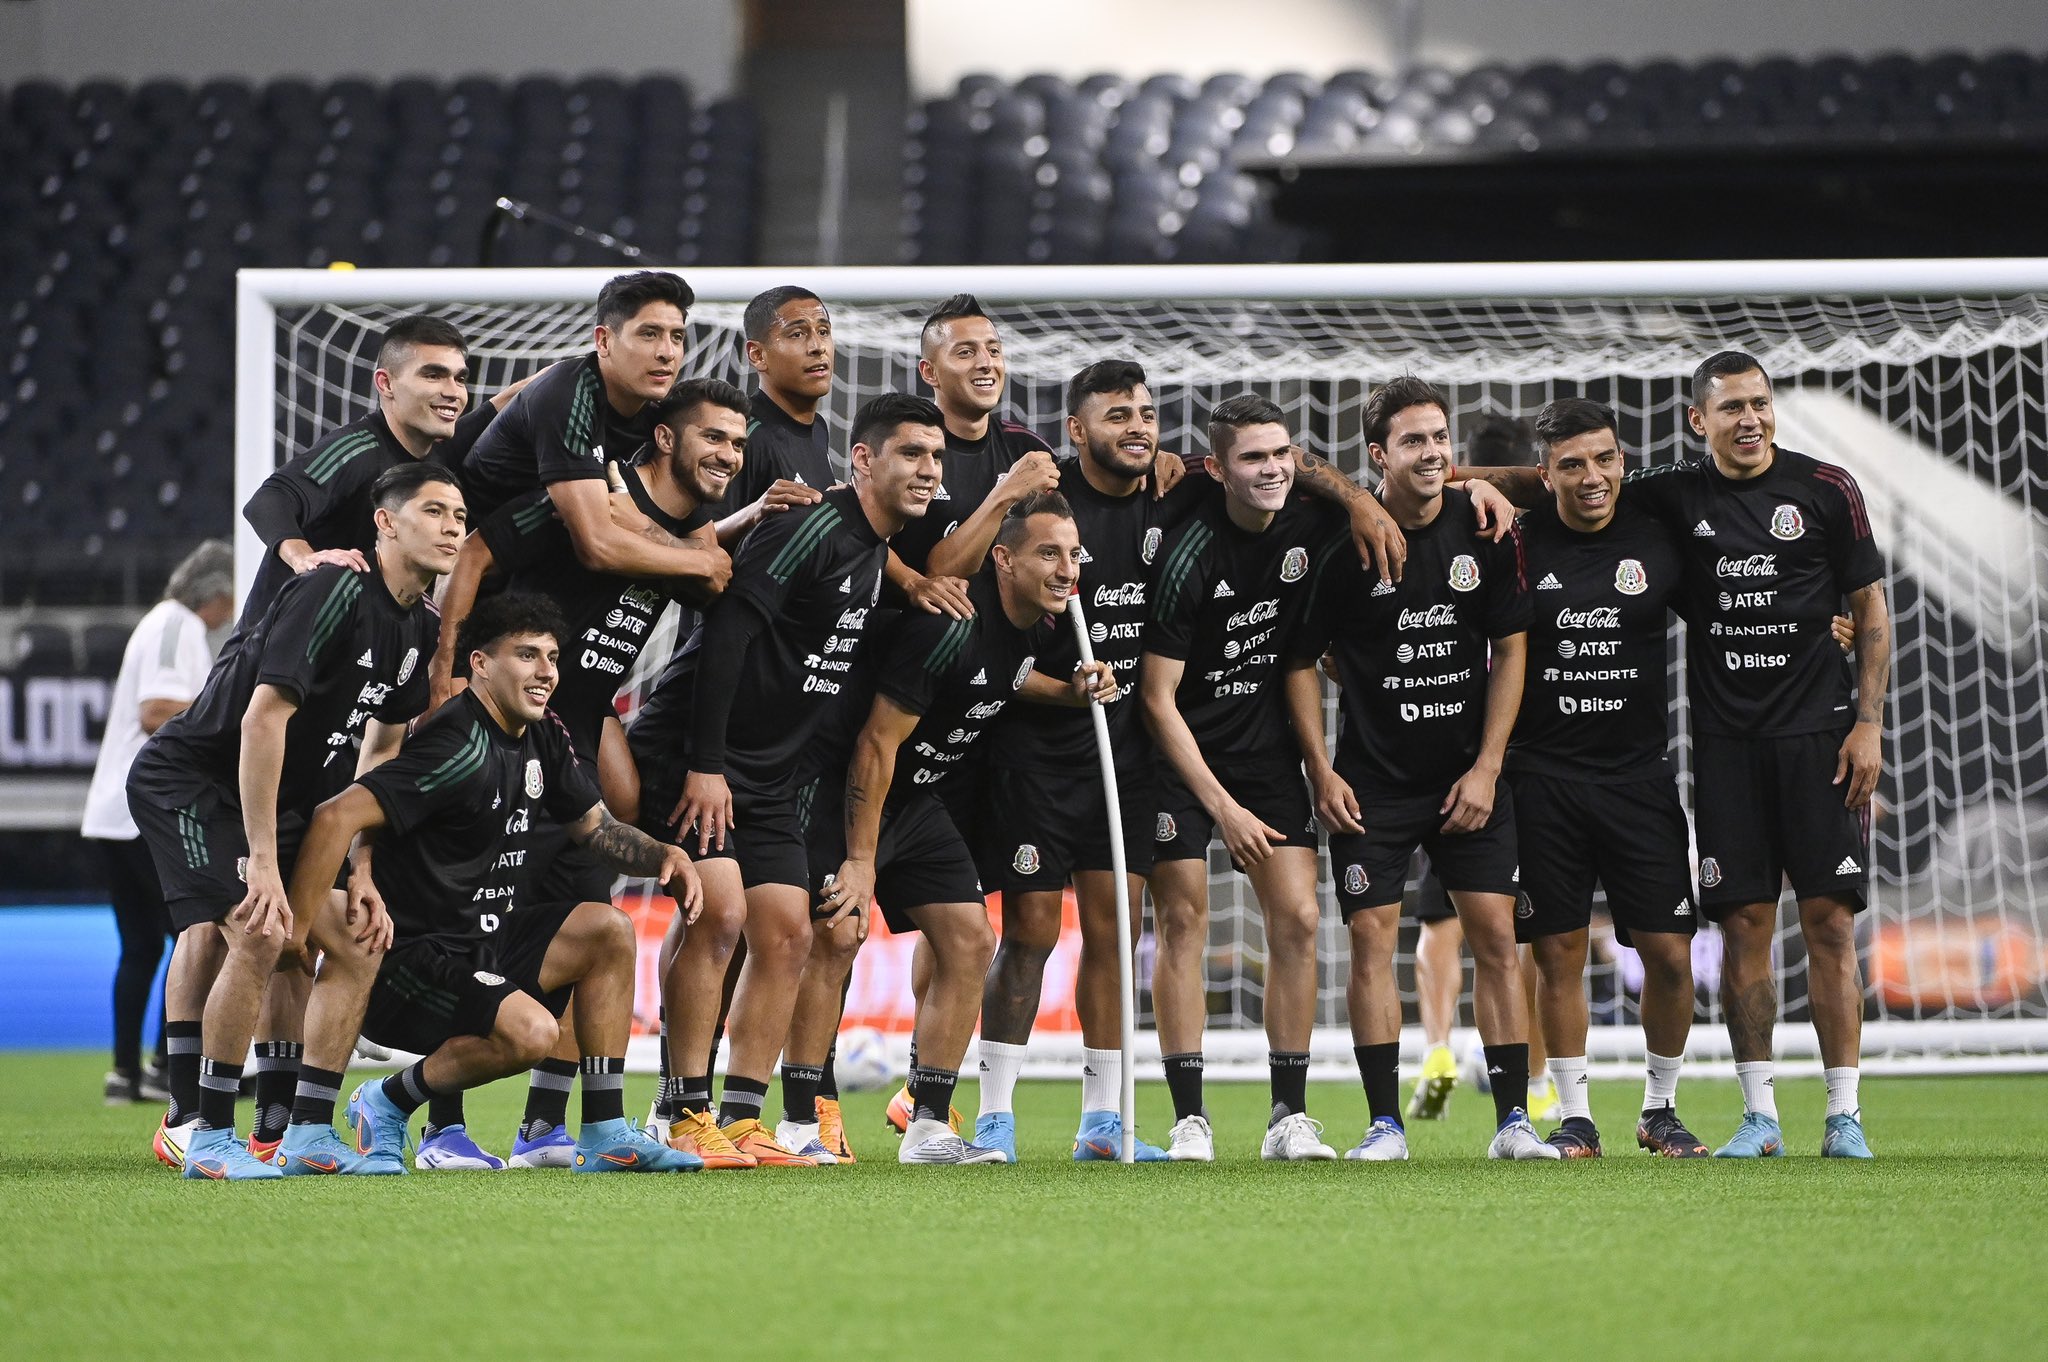 Selección Mexicana previo al partido amistoso contra Nigeria. Foto: @miseleccionmx